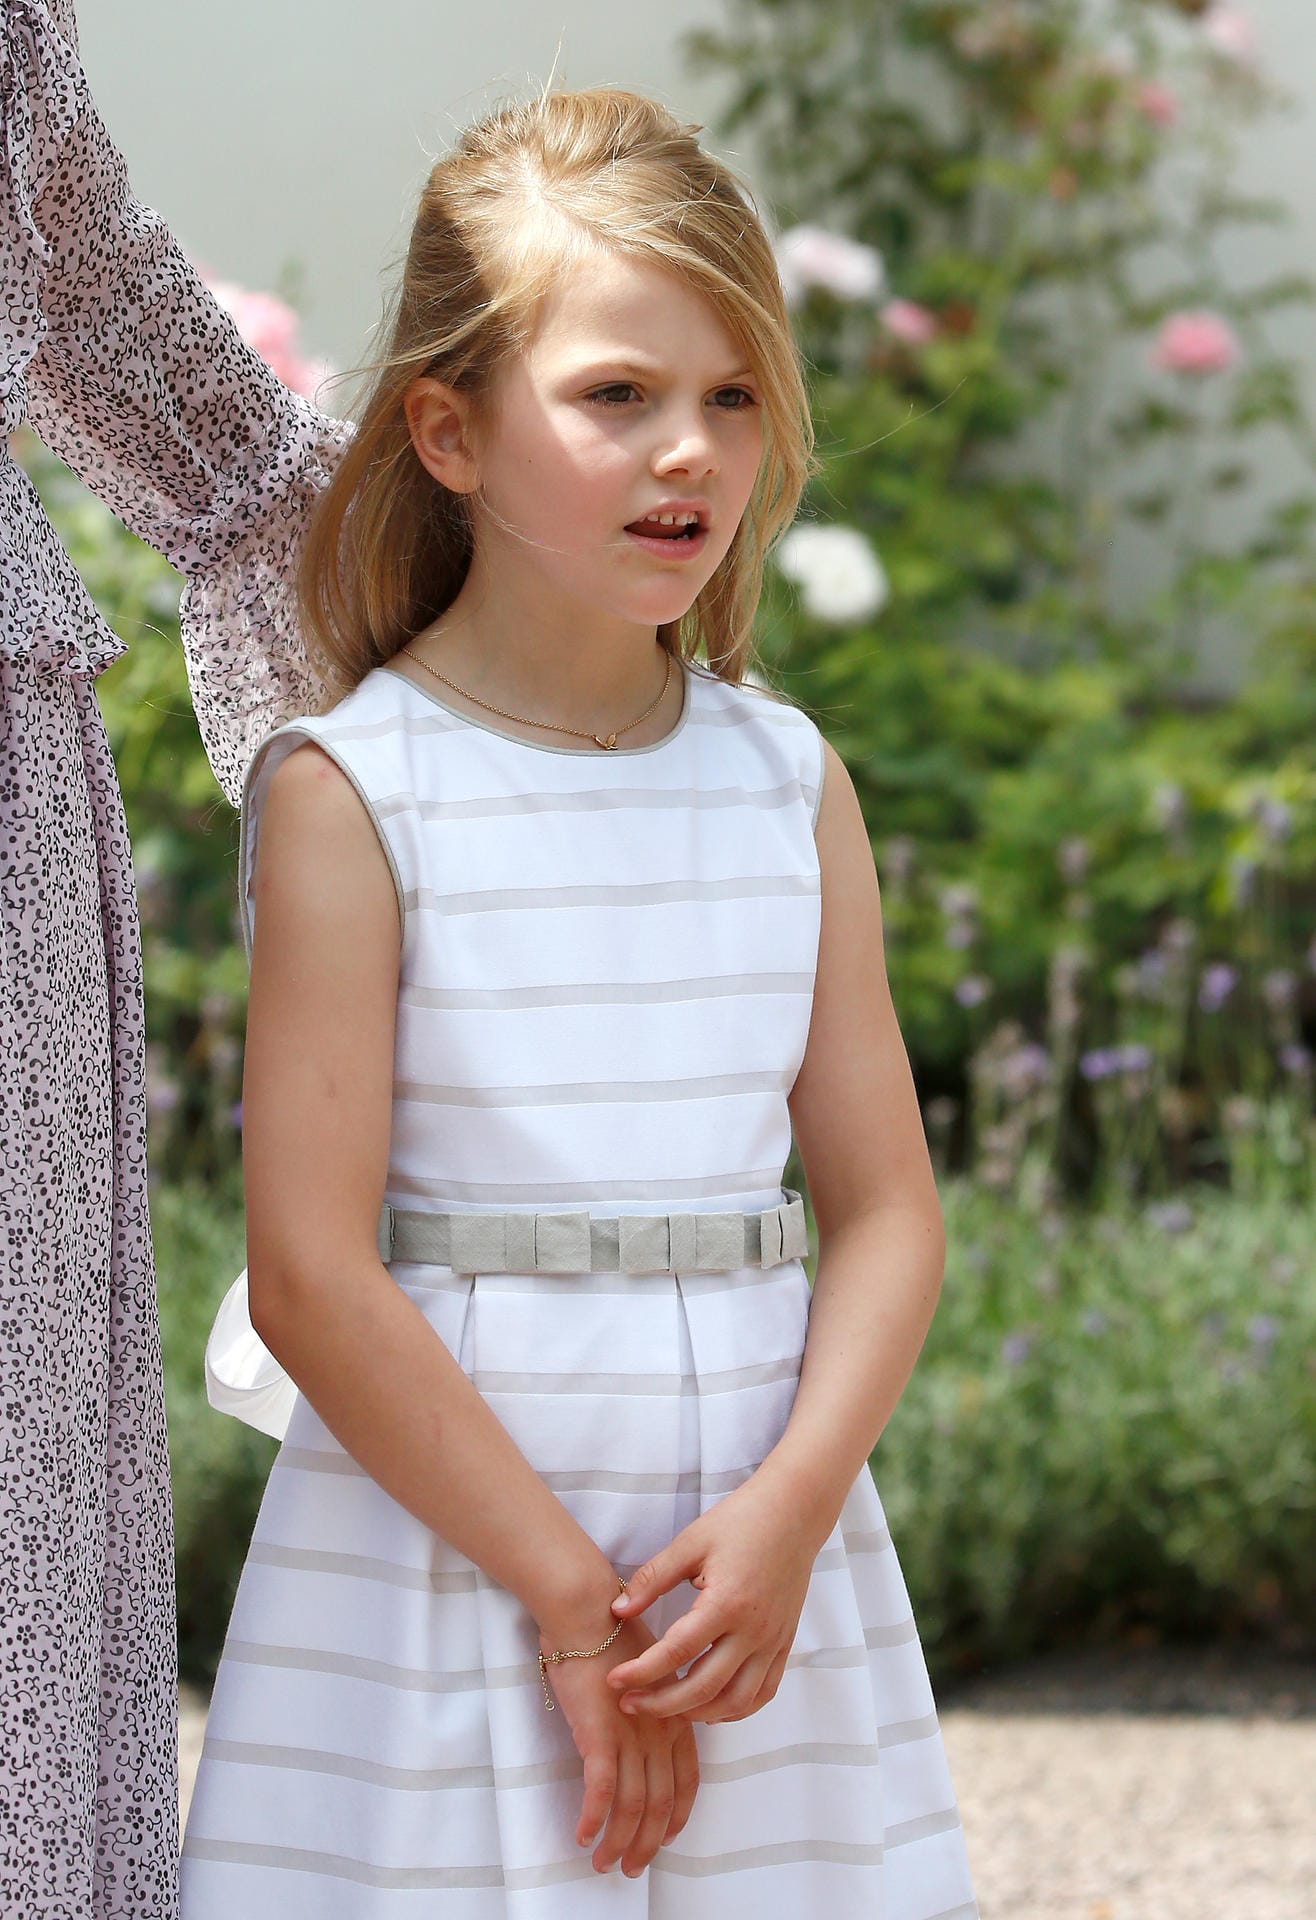 Gestreift mögen aus auch schon die kleinsten Royals: So wie hier im Juli 2018 Prinzessin Estelle von Schweden.